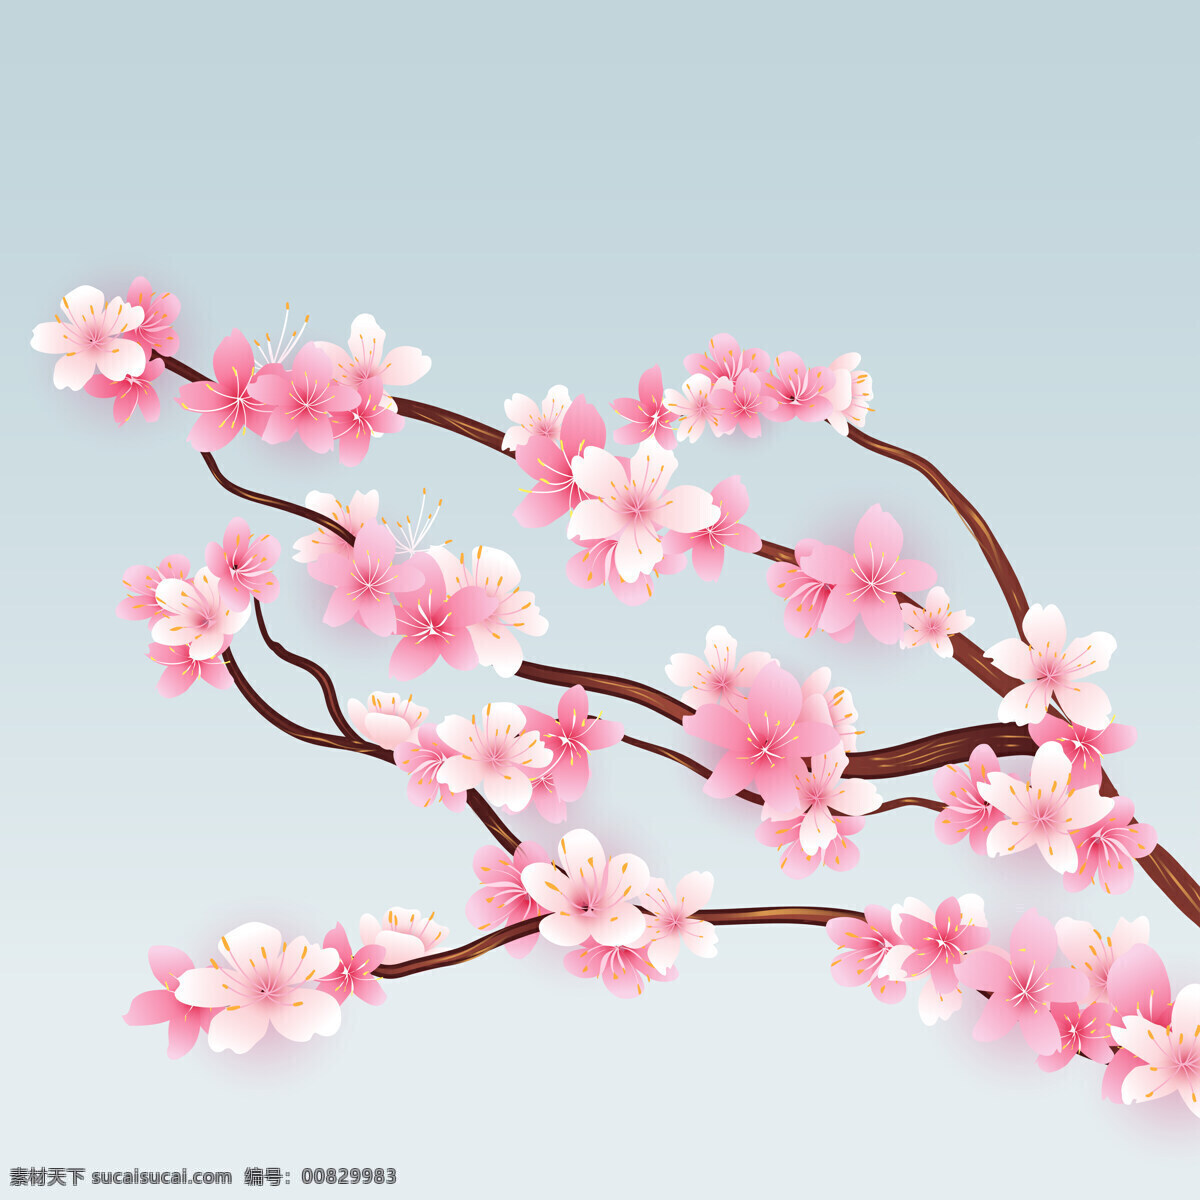 樱花壁纸 背景图片 樱花 樱花树 植物花卉 高清 图片壁纸